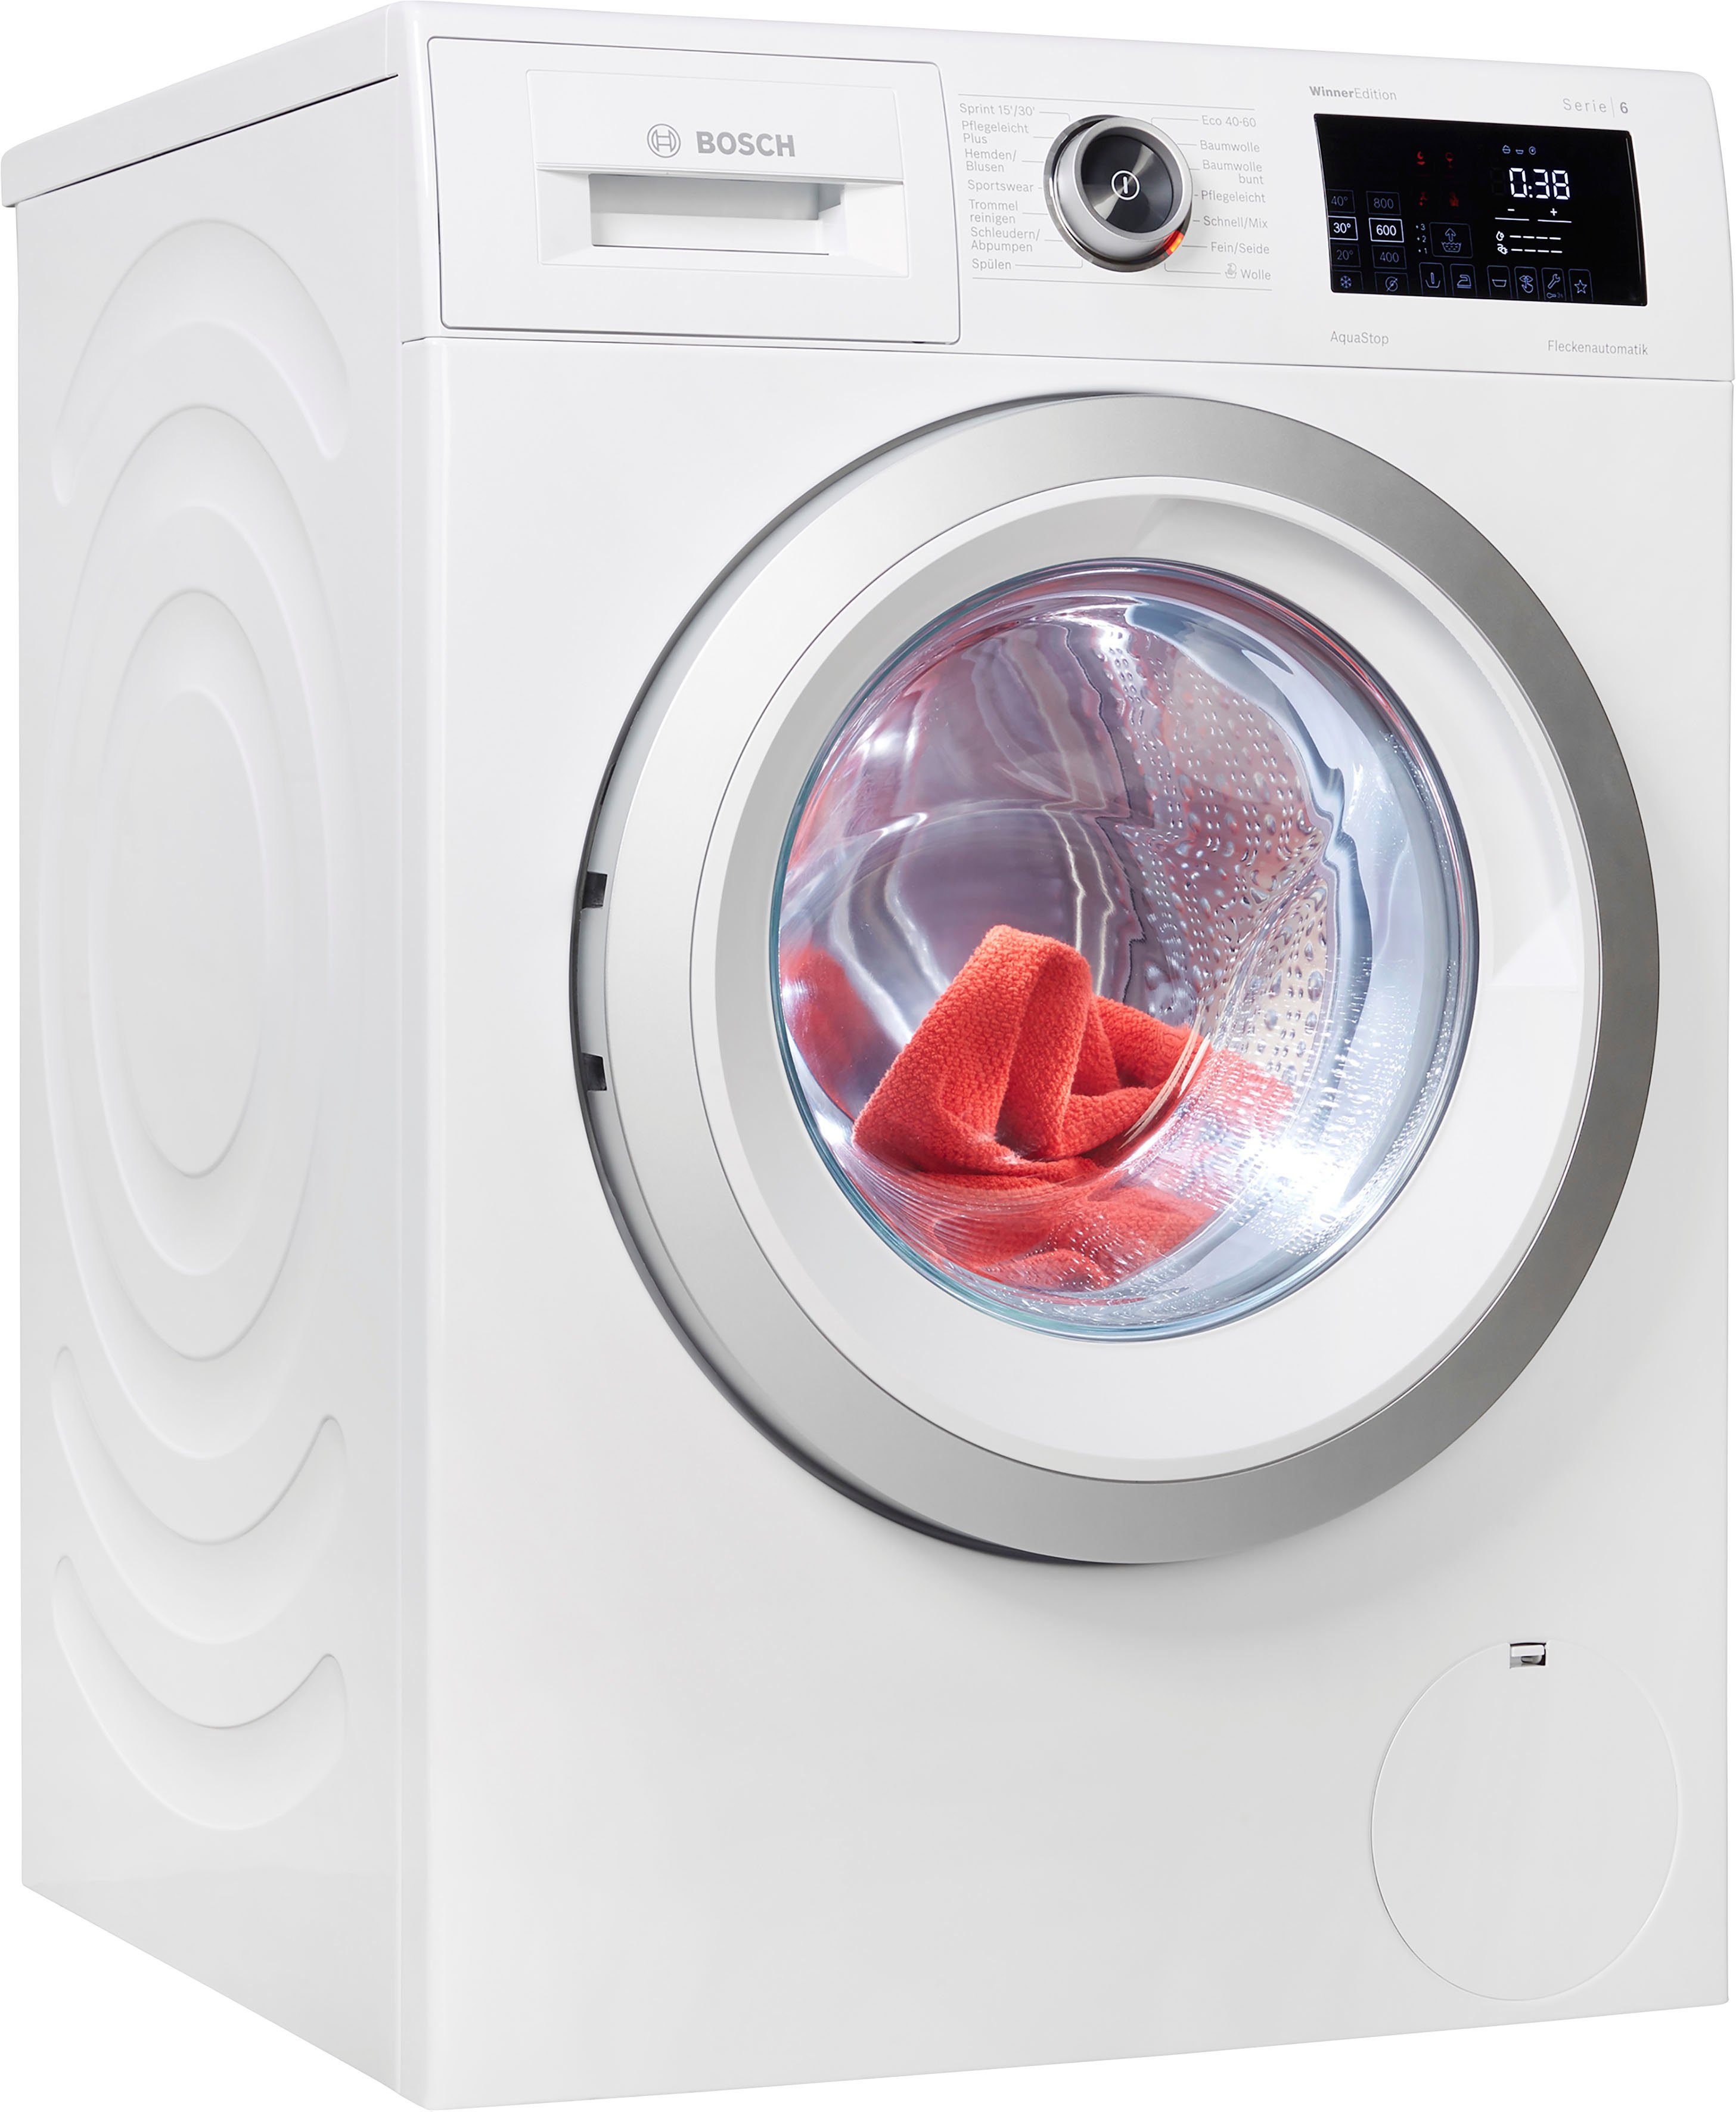 BOSCH Waschmaschine WAU28RWIN, kg, U/min 1400 9